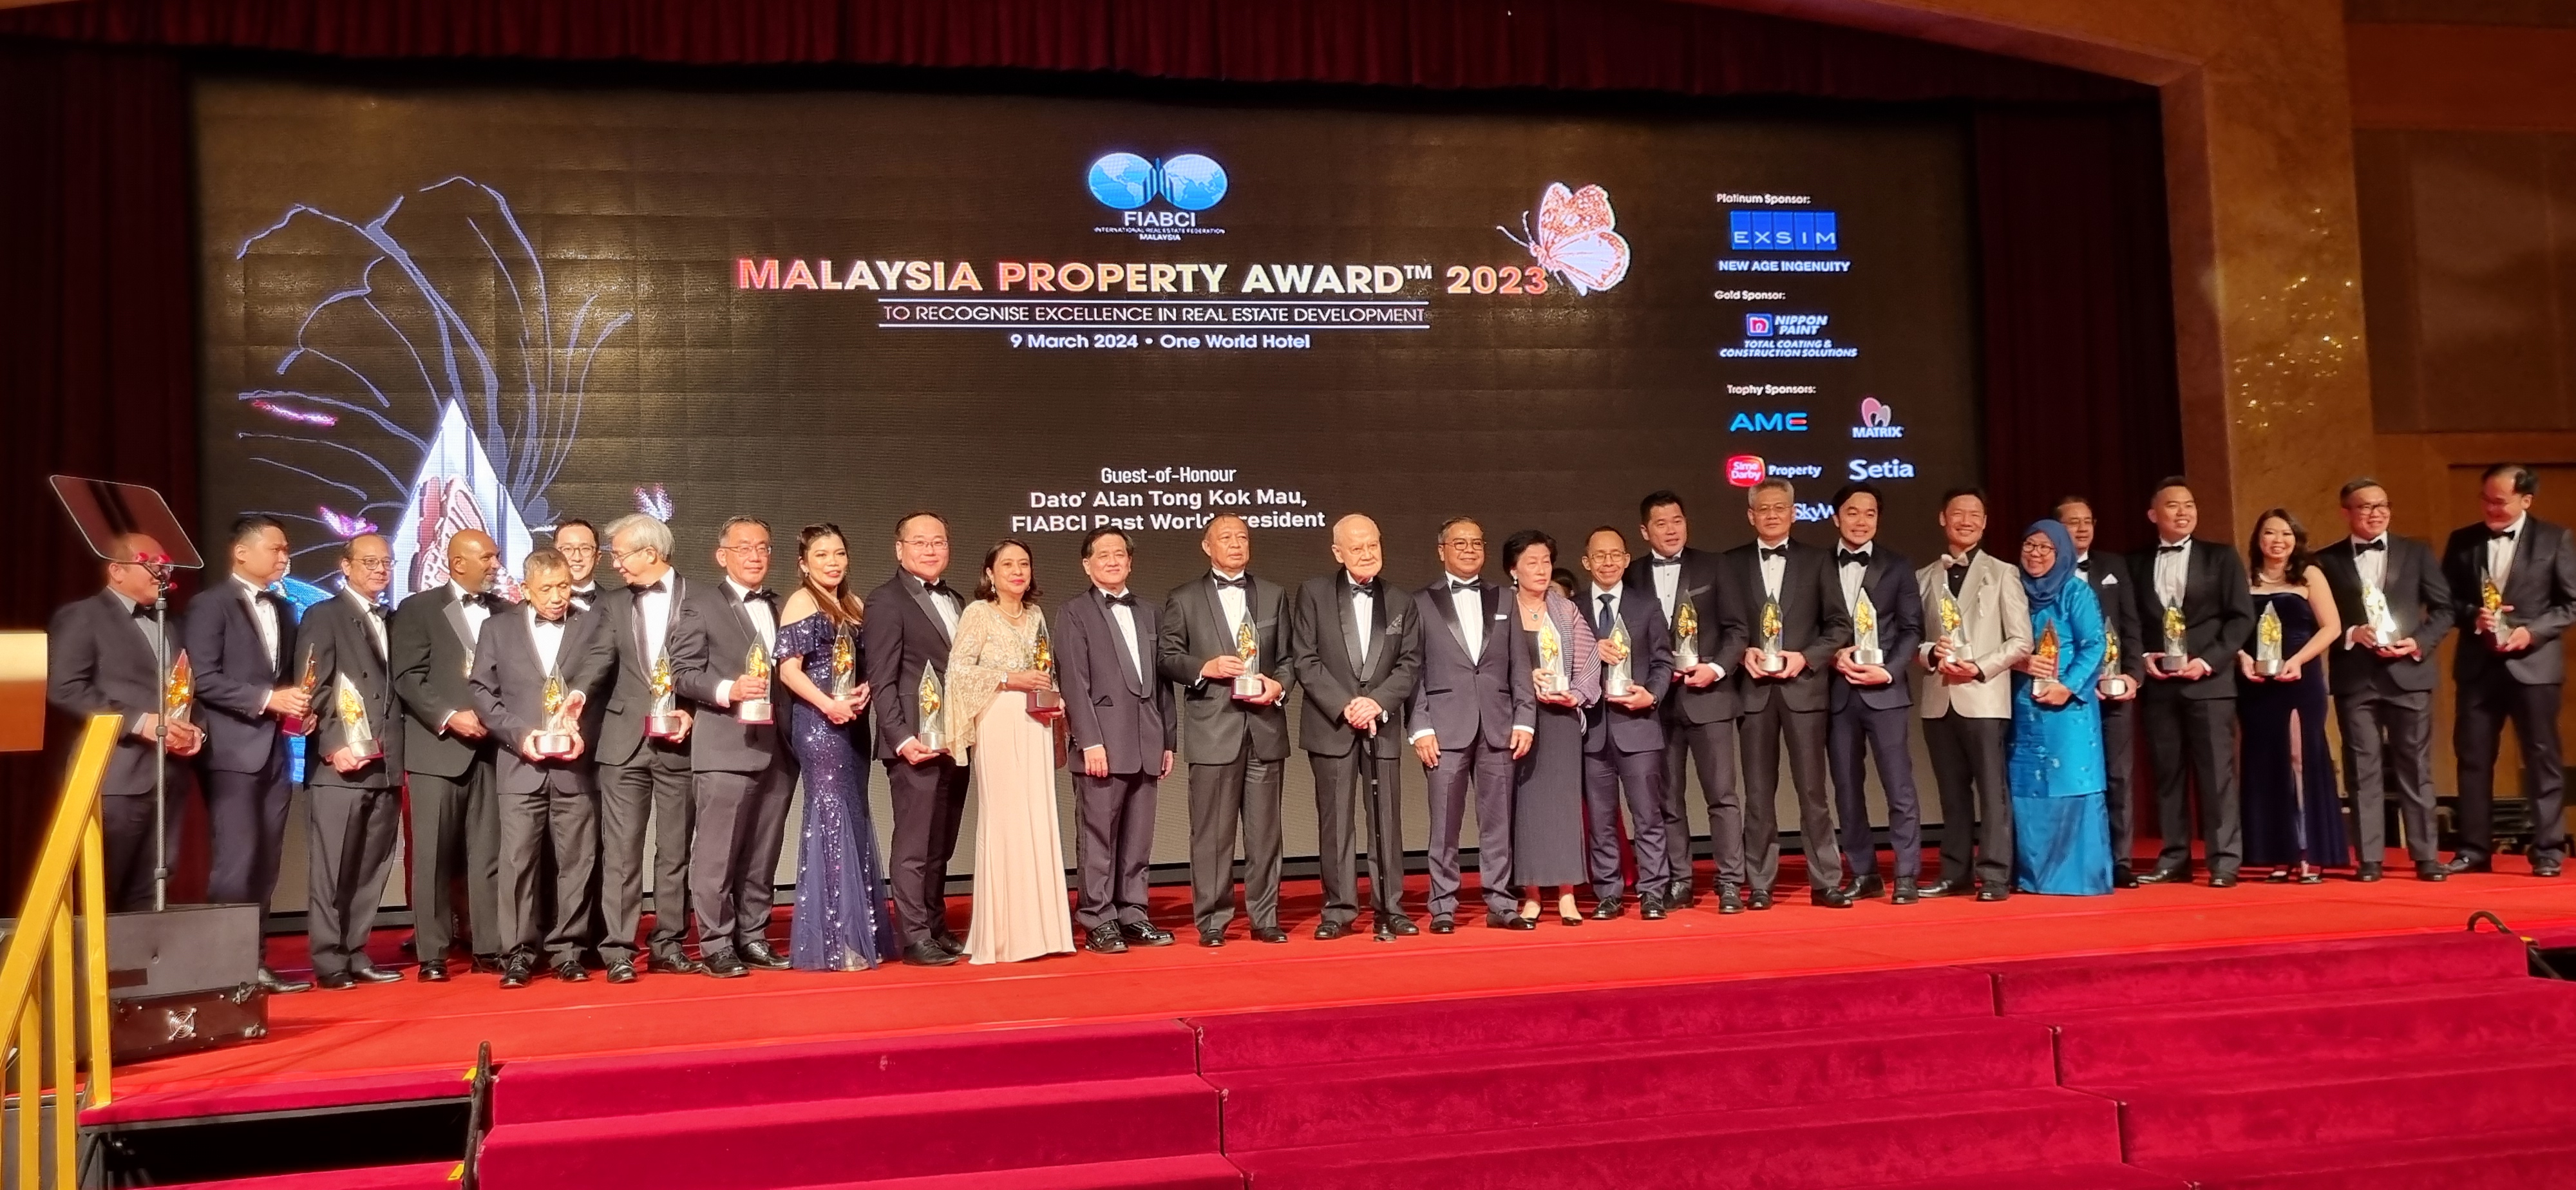 FIABCI Malaysia Property Awards 2023 3